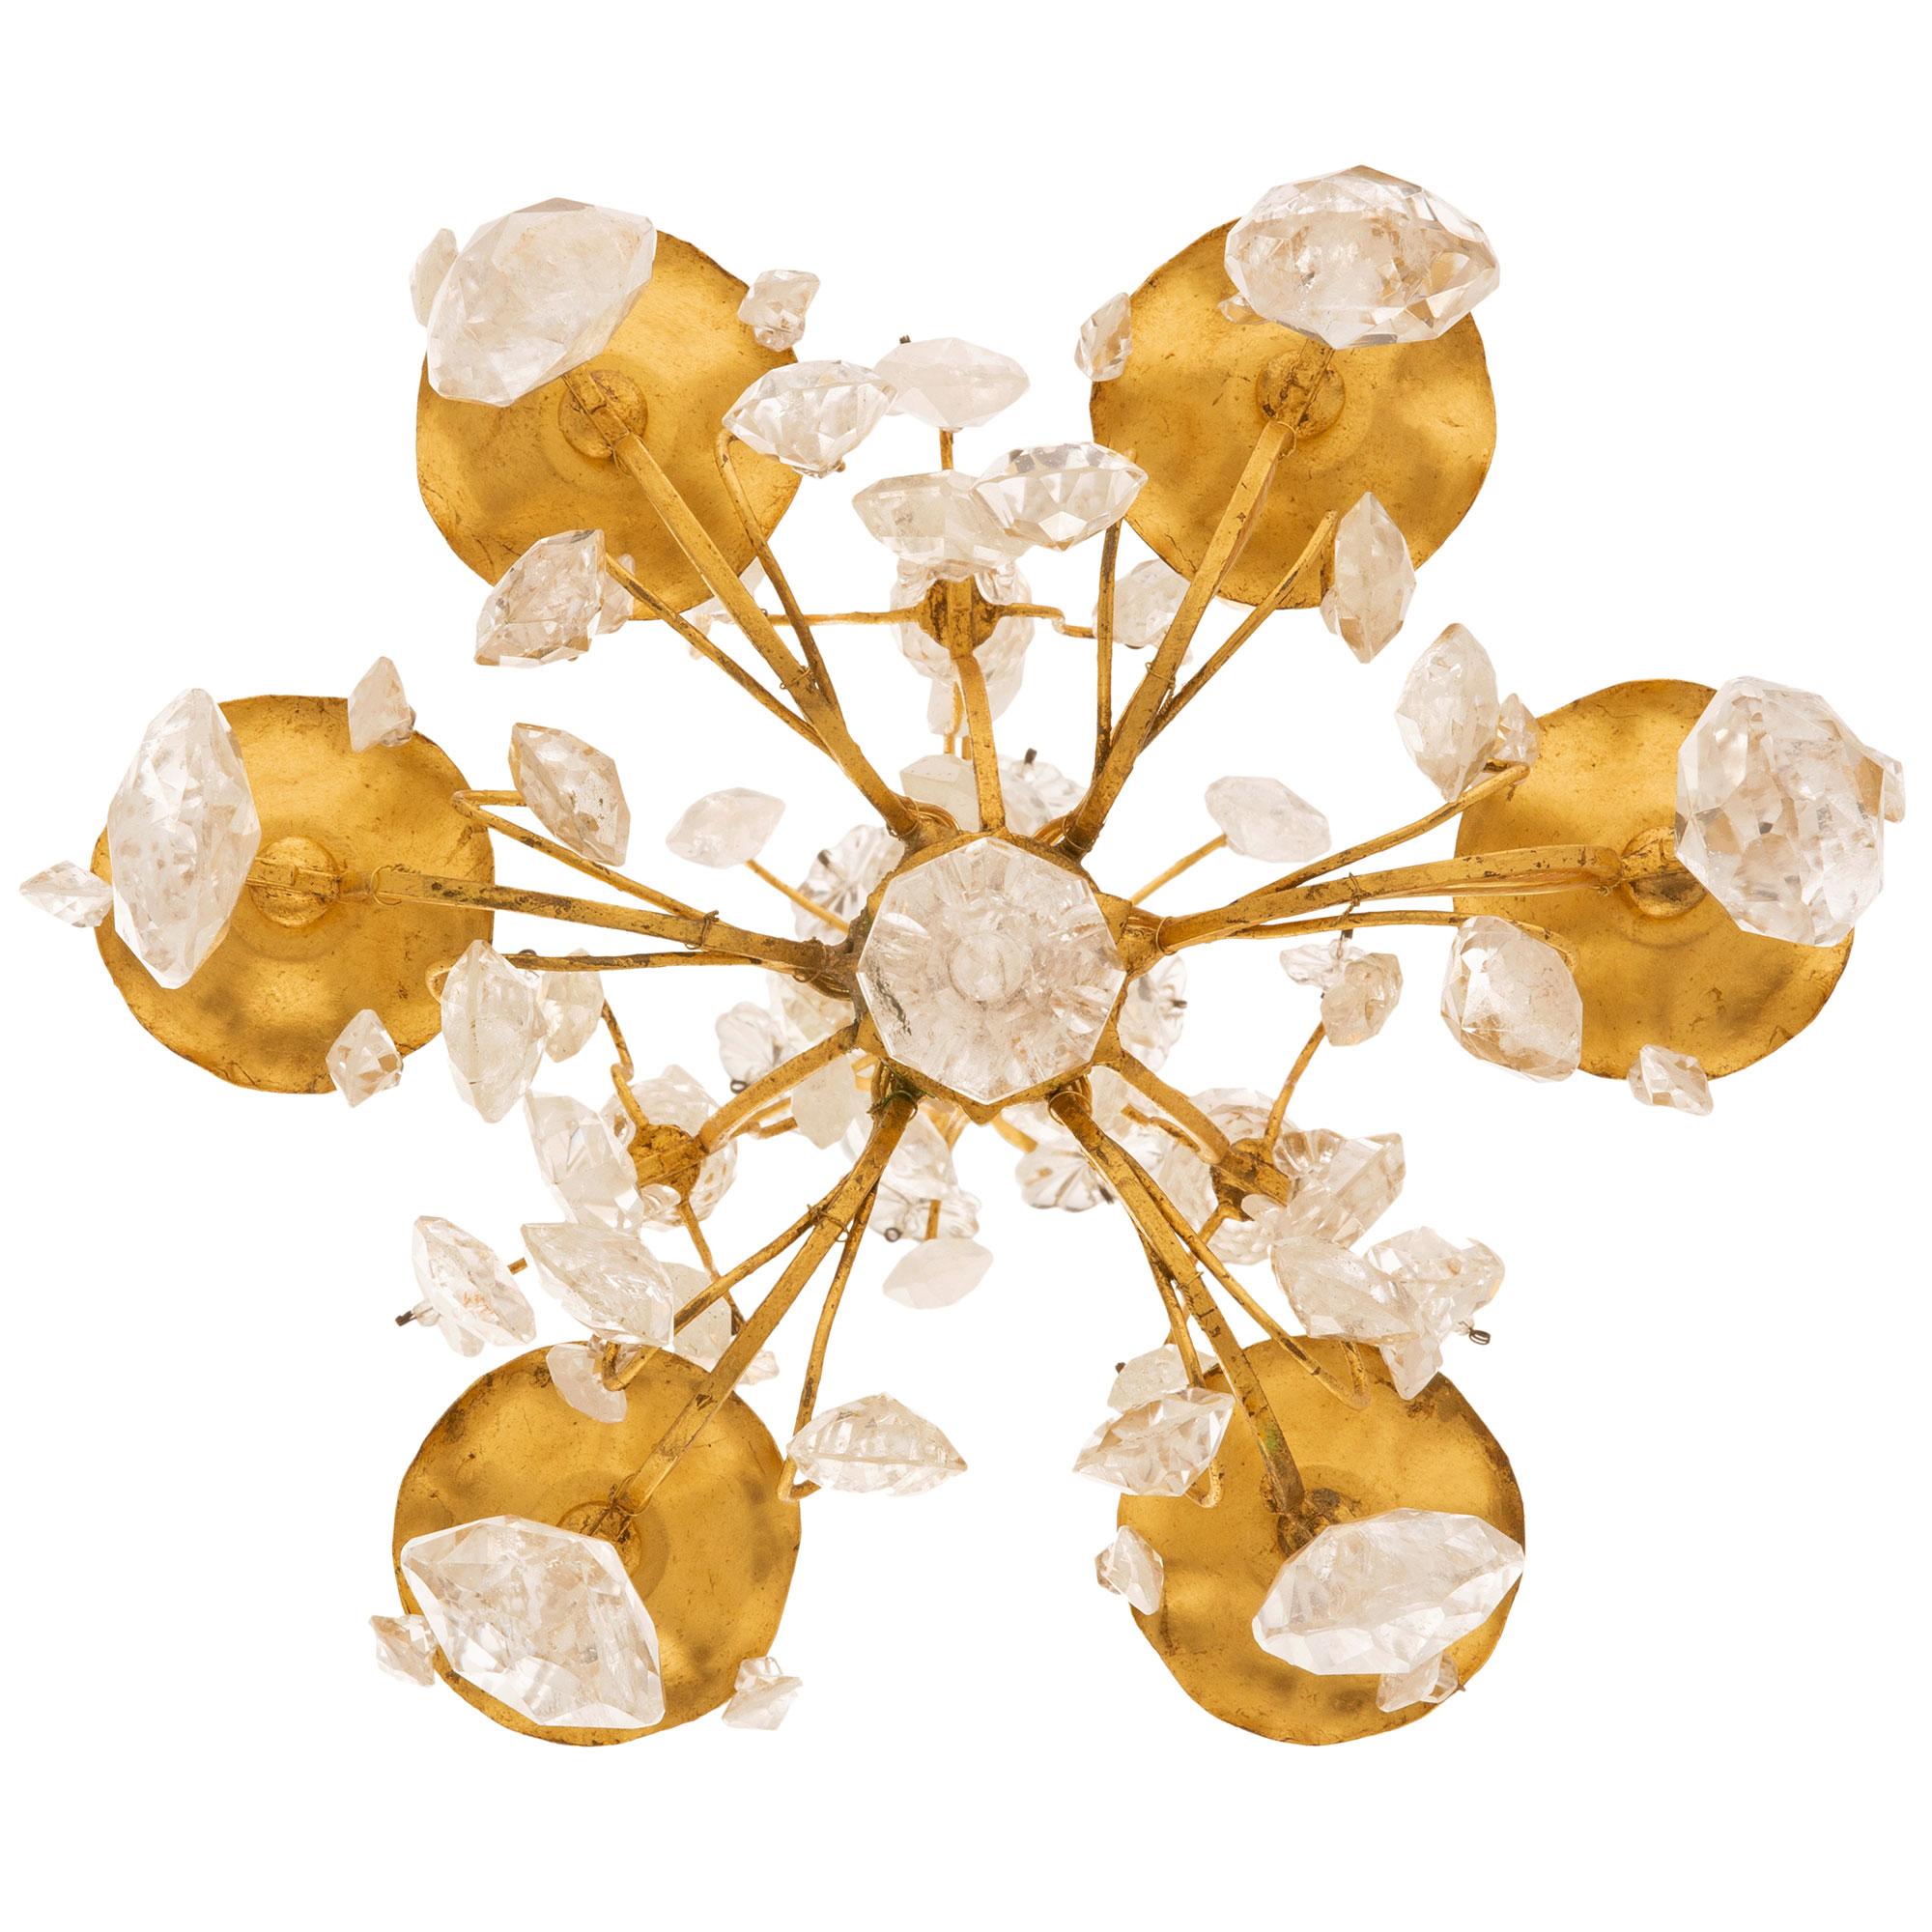 Ein eleganter und hochwertiger italienischer Kronleuchter aus dem frühen 19. Jahrhundert aus vergoldetem Metall und Bergkristall. Der sechsarmige Kronleuchter mit sechs Lichtern zeigt verschlungene C